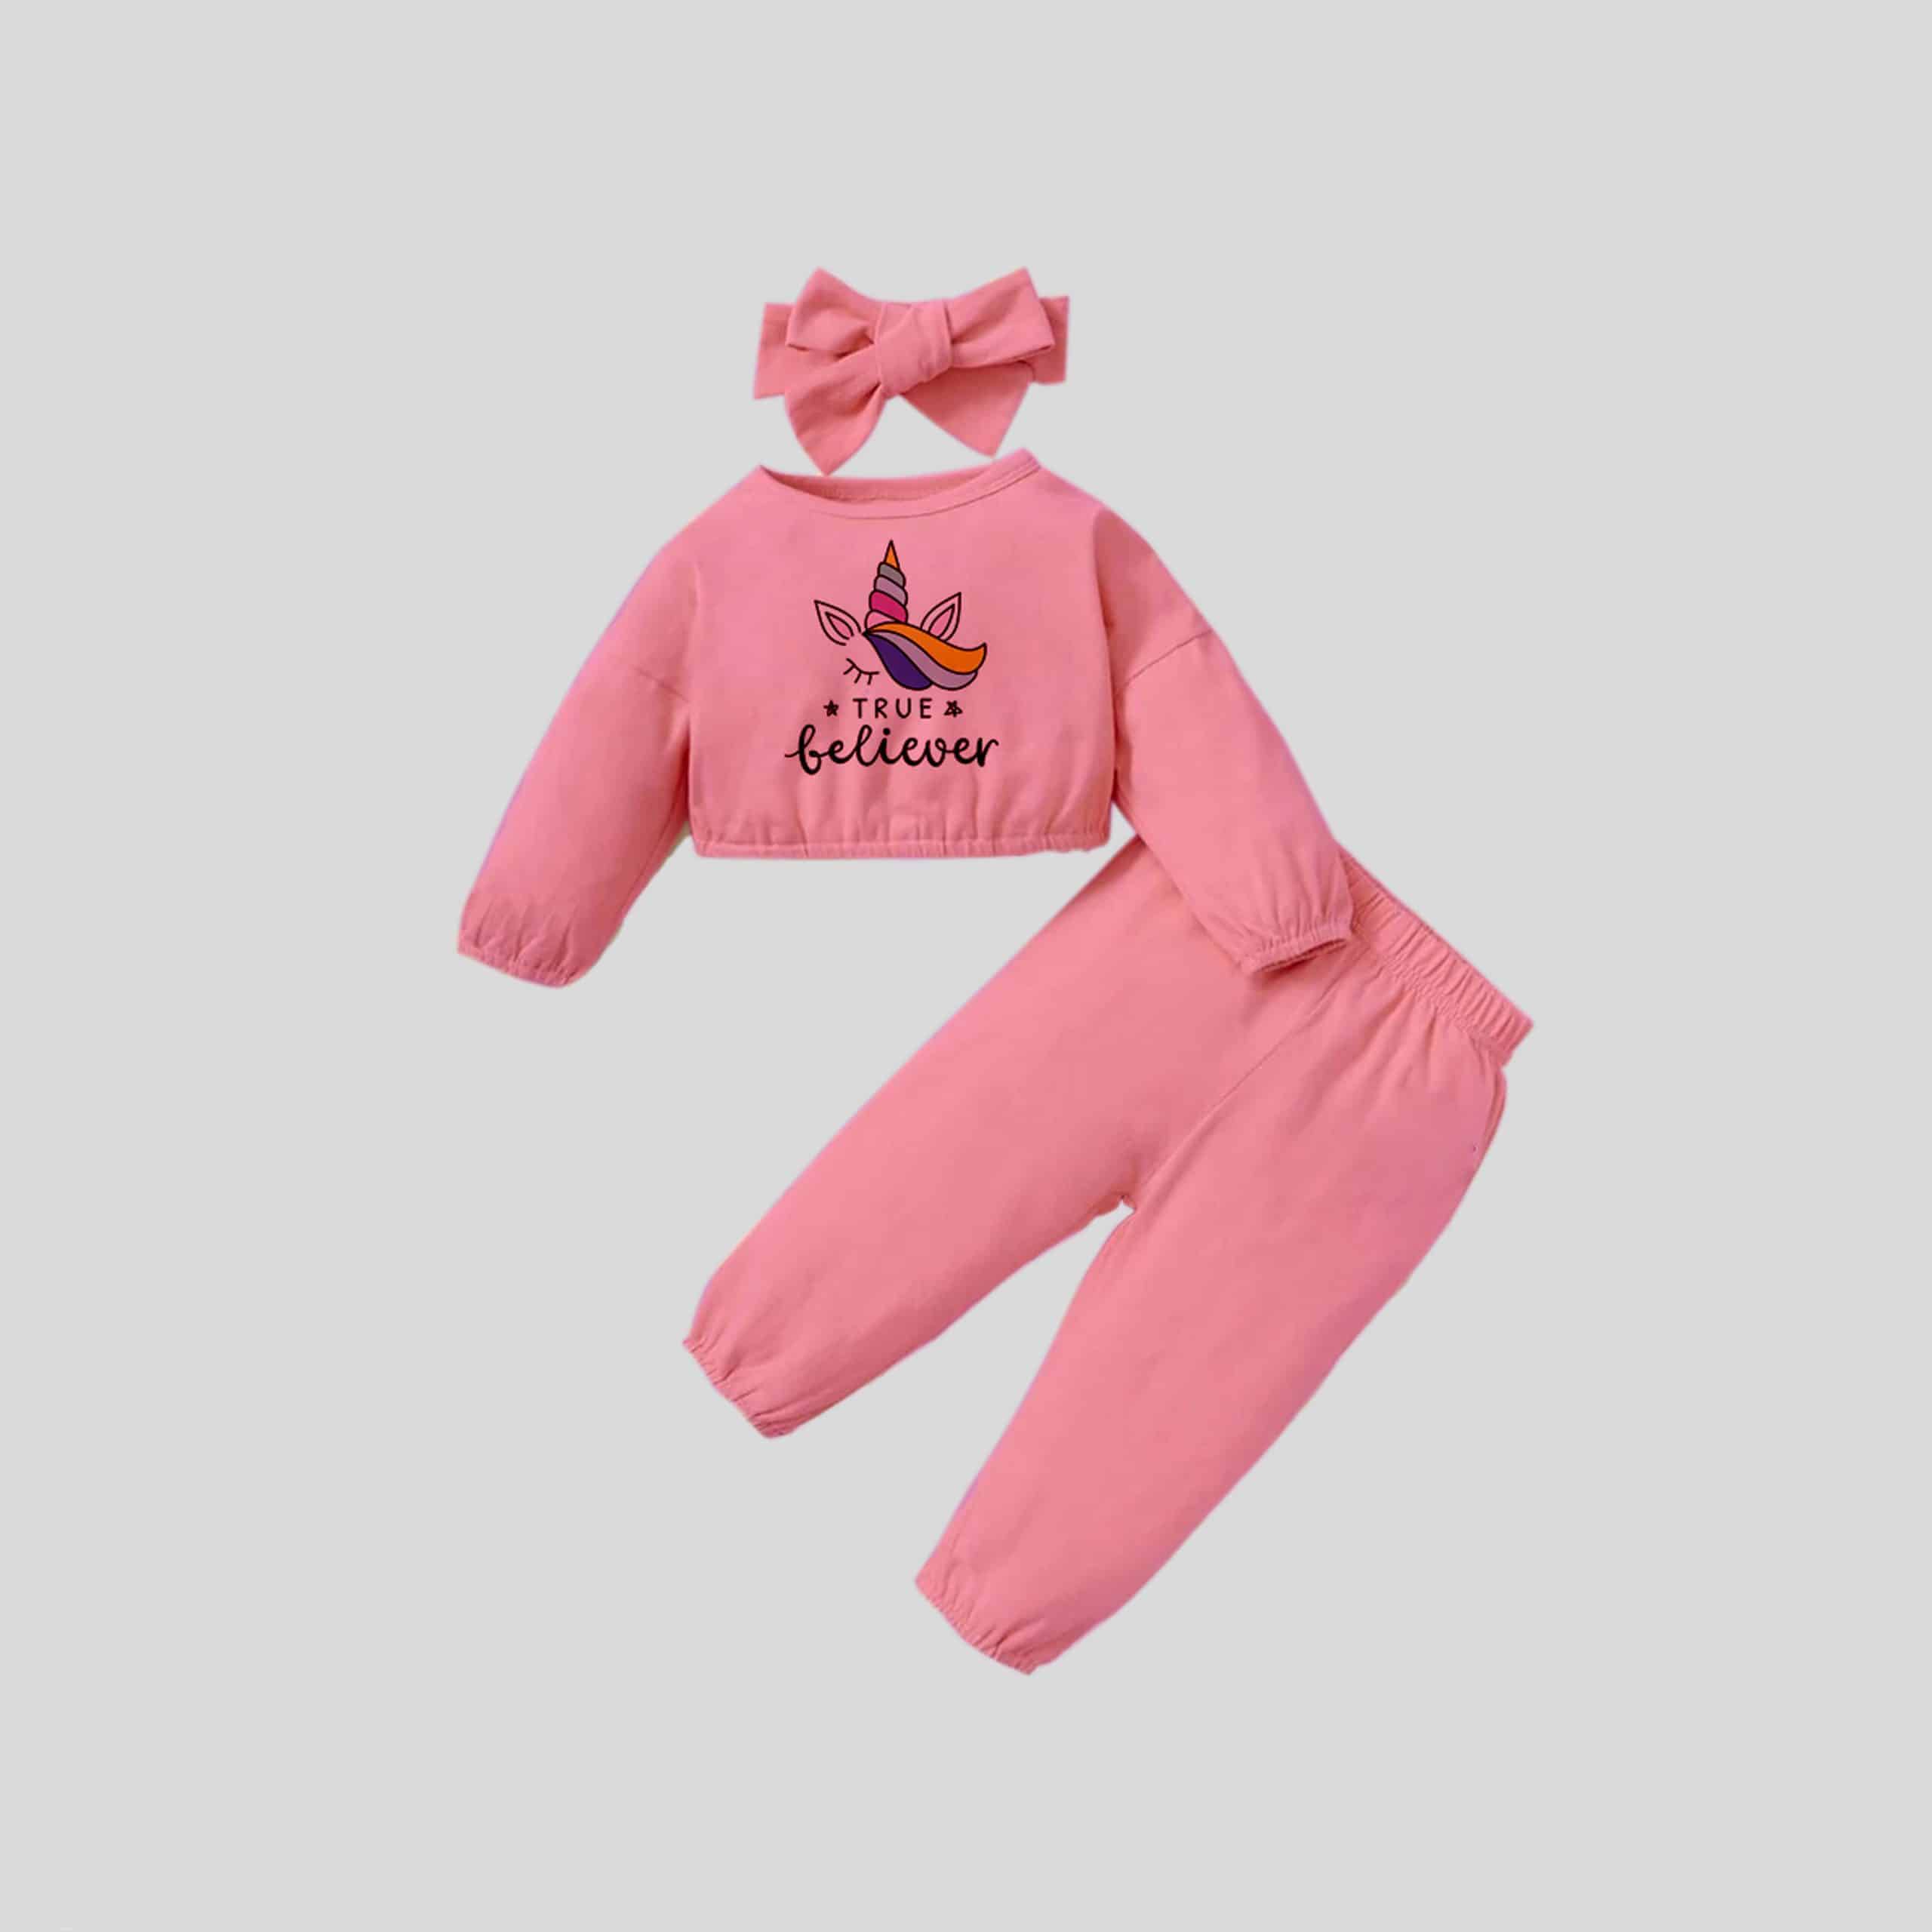 Girls Pink Sweatshirt with Cute print Details and Pants Set - RKFCW304